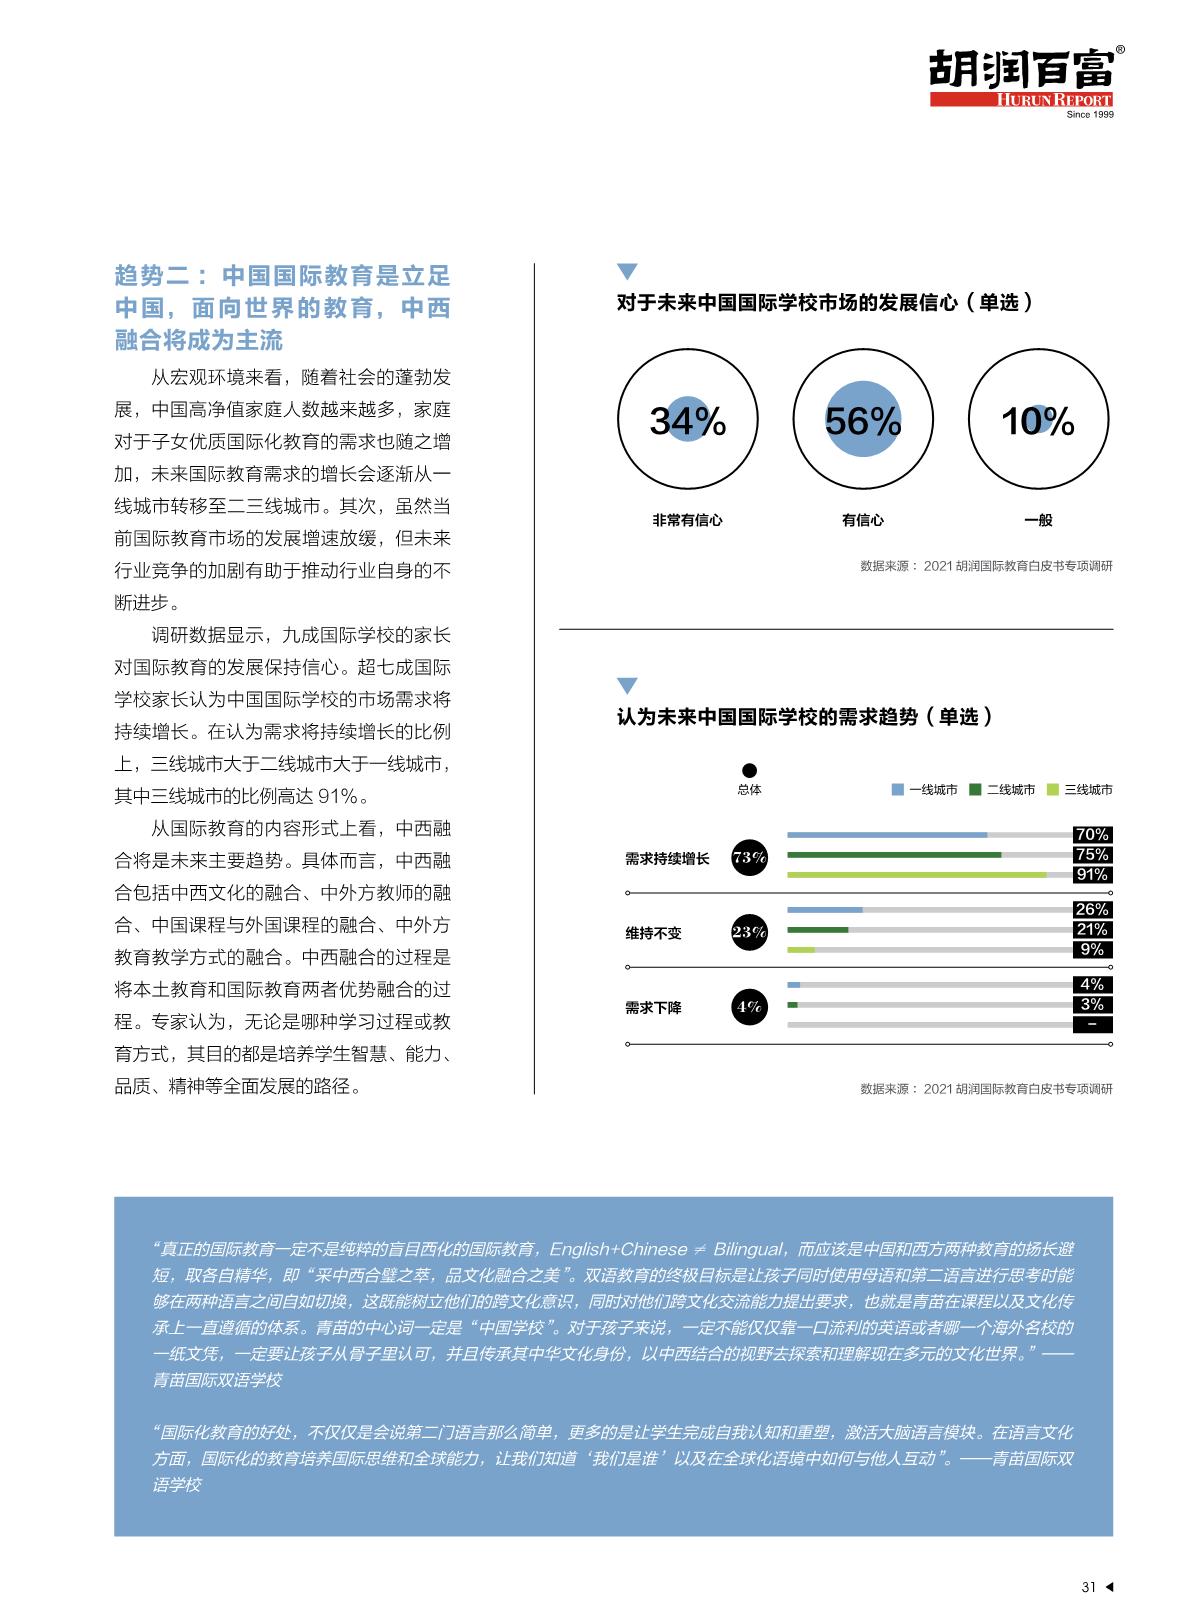 2021中国国际教育白皮书_32